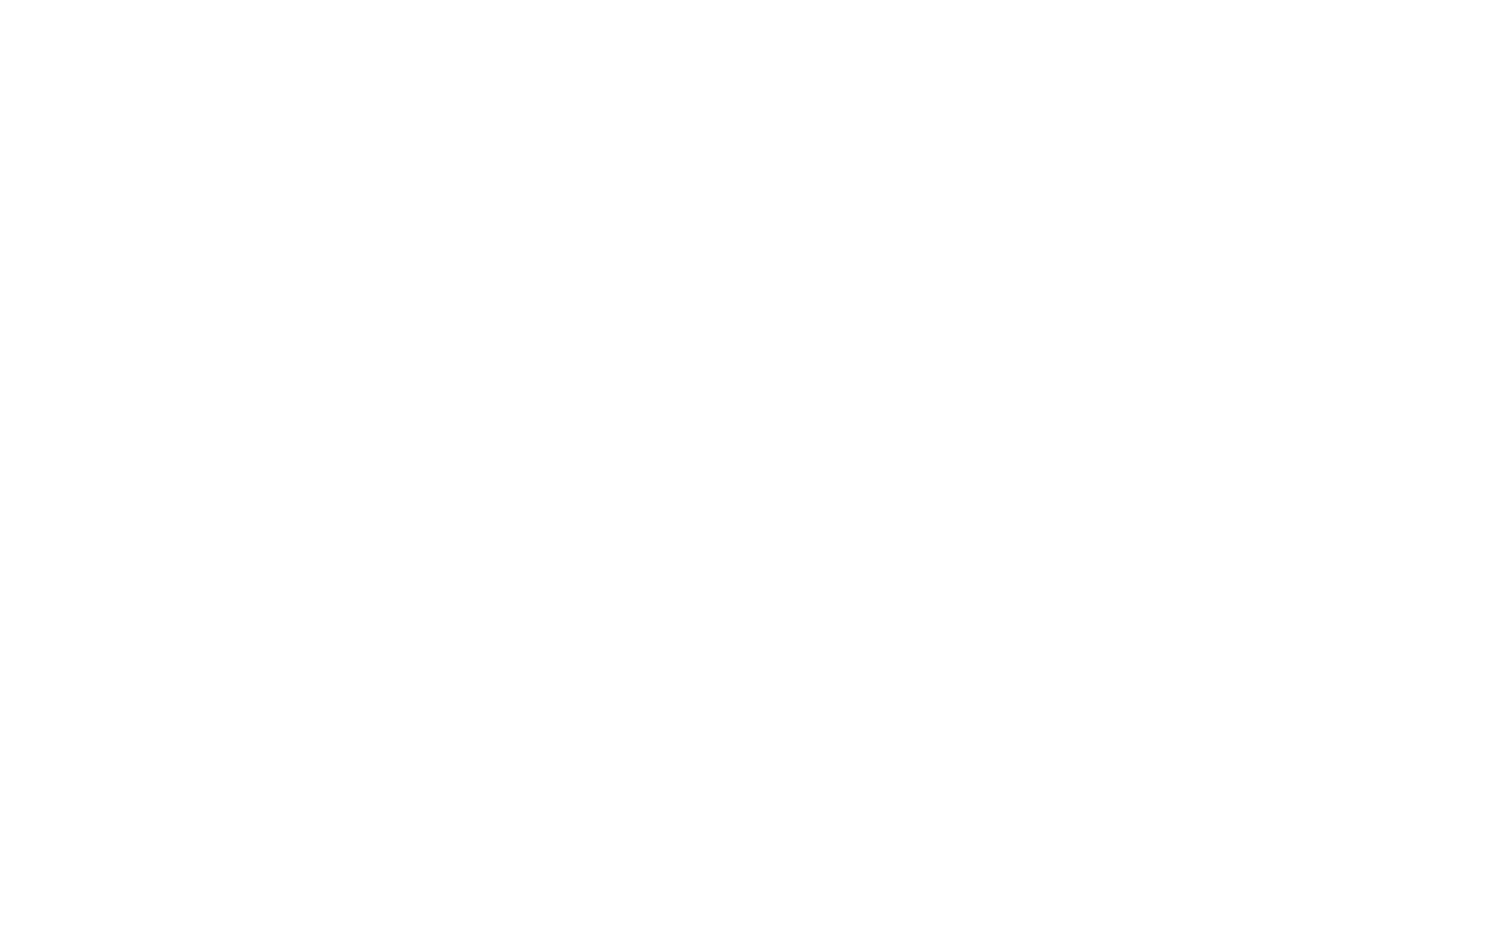 FBC Church